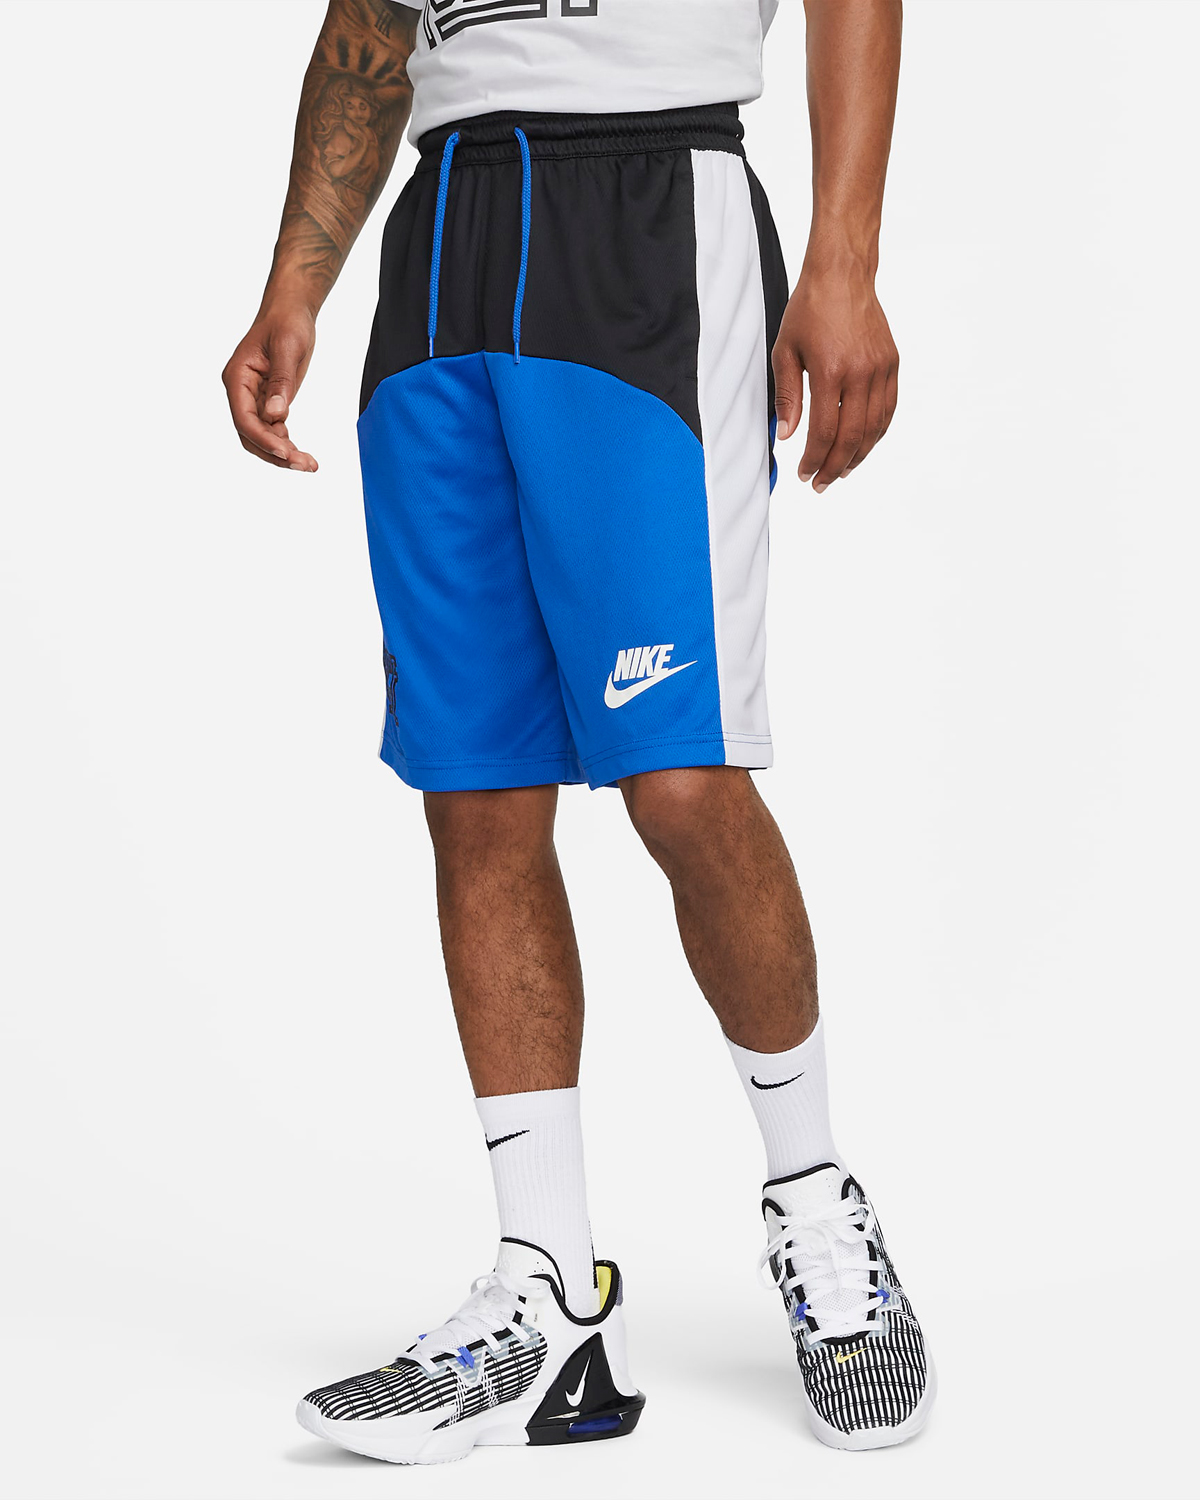 Nike-Starting-5-Basketball-Shorts-Game-Royal-Black-White-1